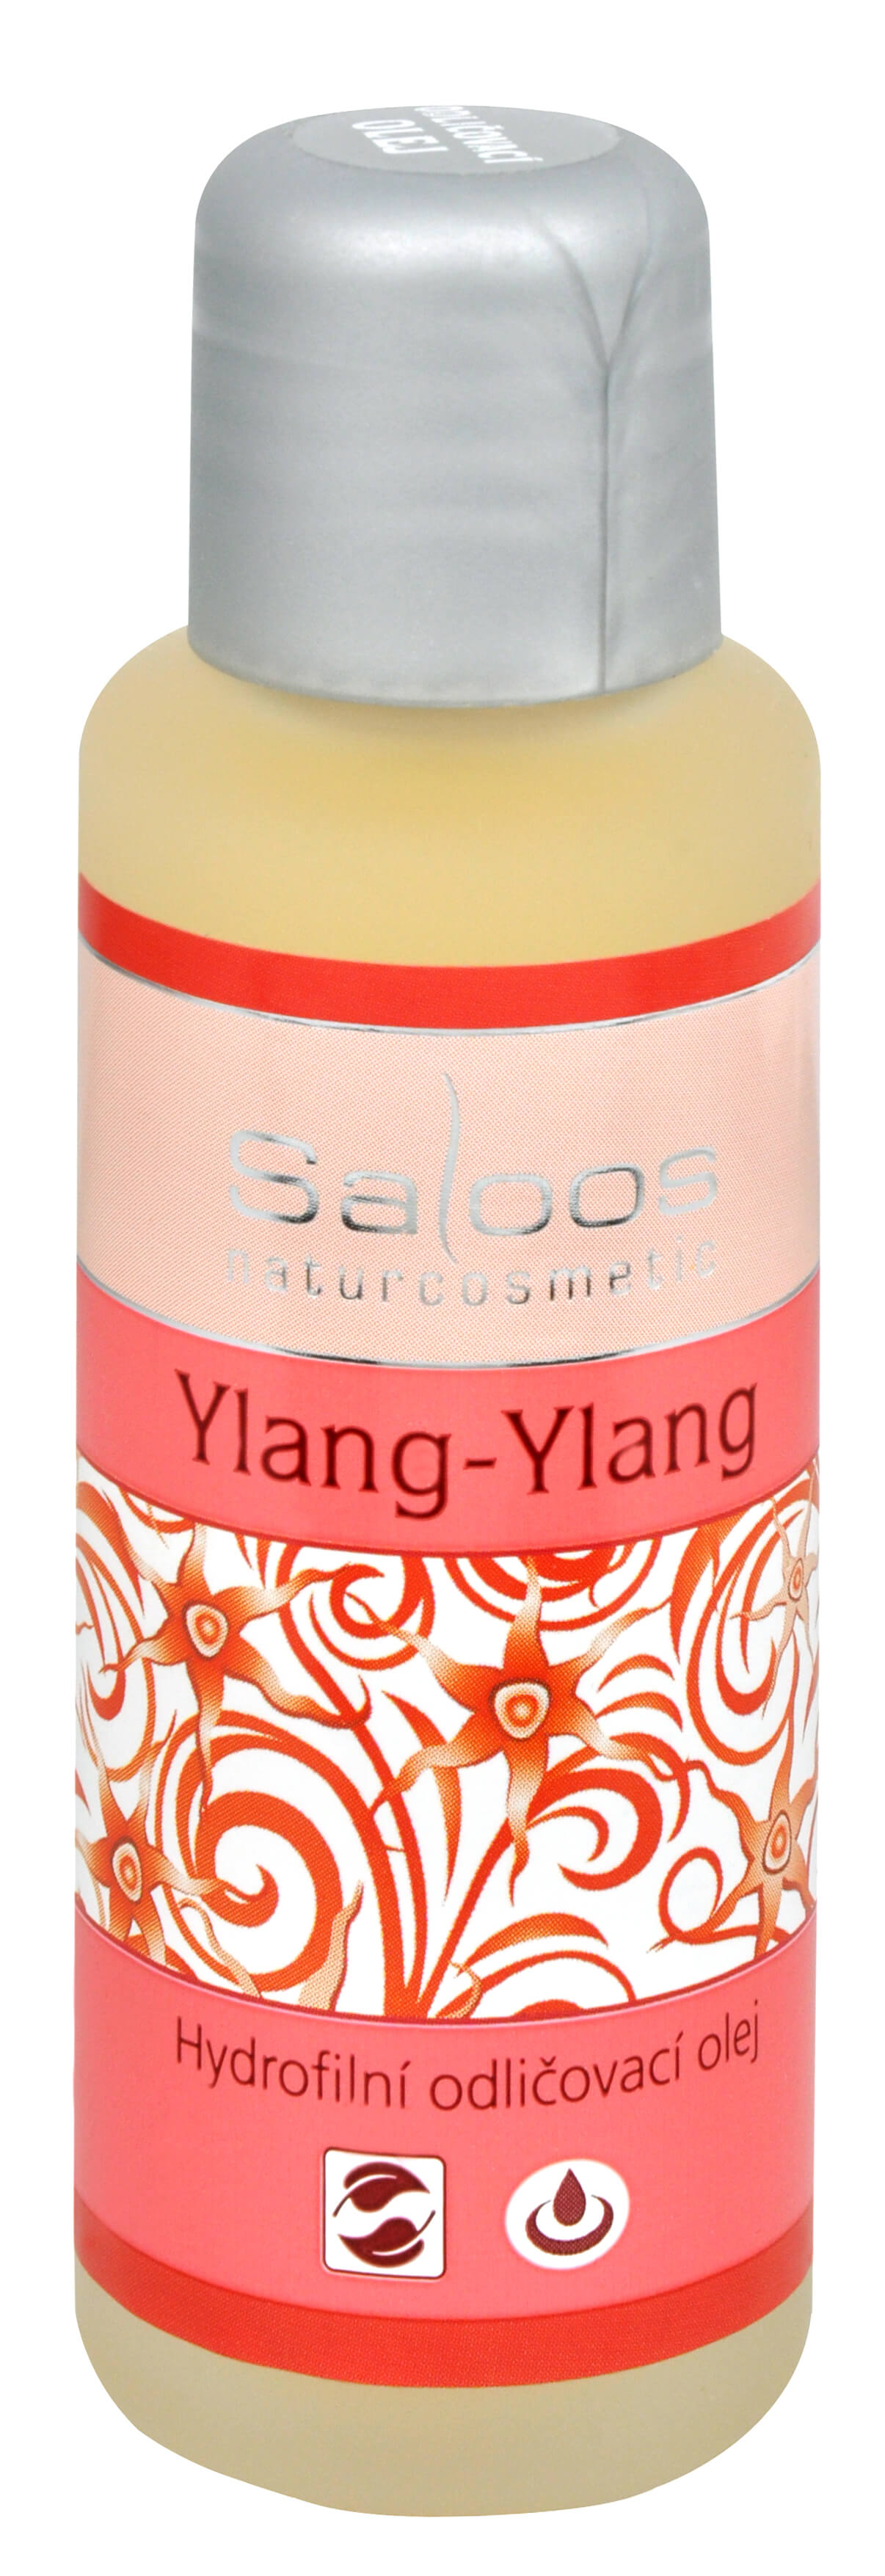 Saloos Hydrofilní odličovací olej - Ylang-Ylang 50 ml